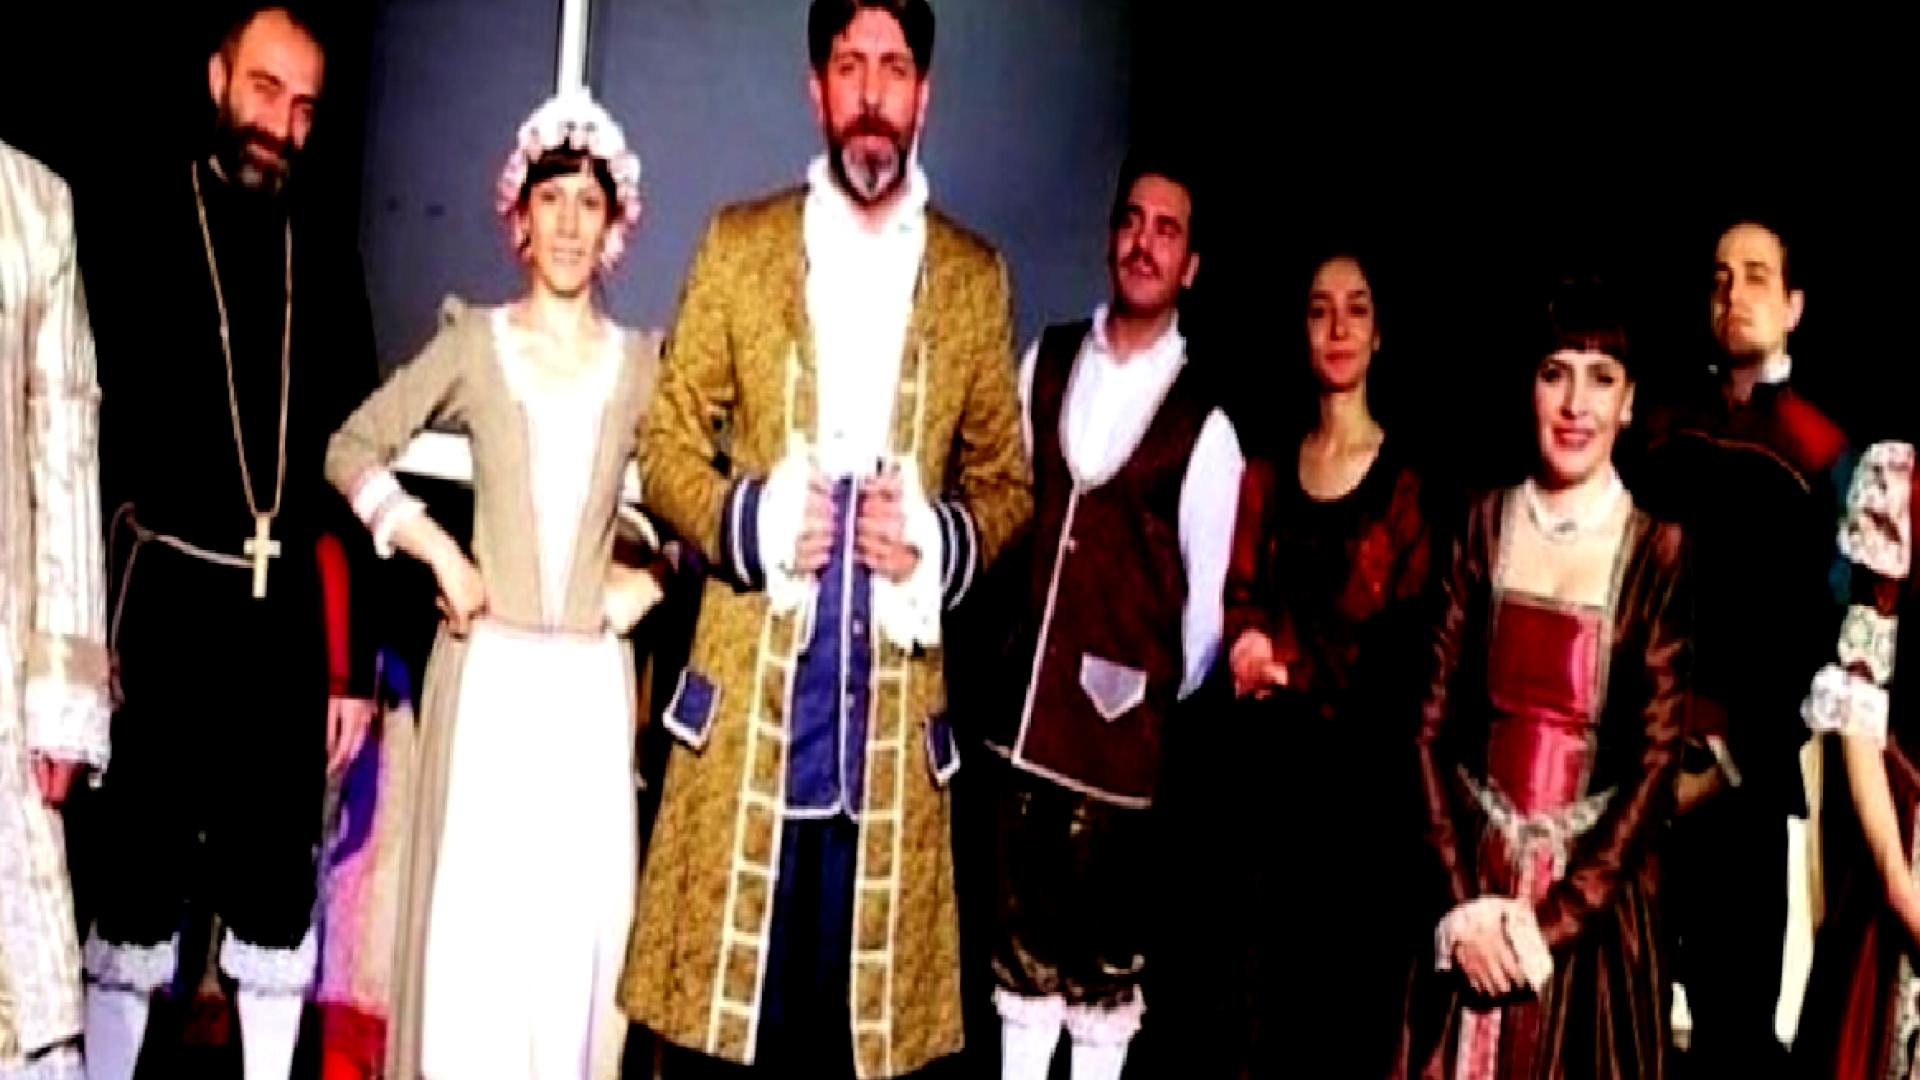 Թուրքիայի քրդաբնակ նահանգում արգելվել է քրդերեն թատերական ներկայացումը